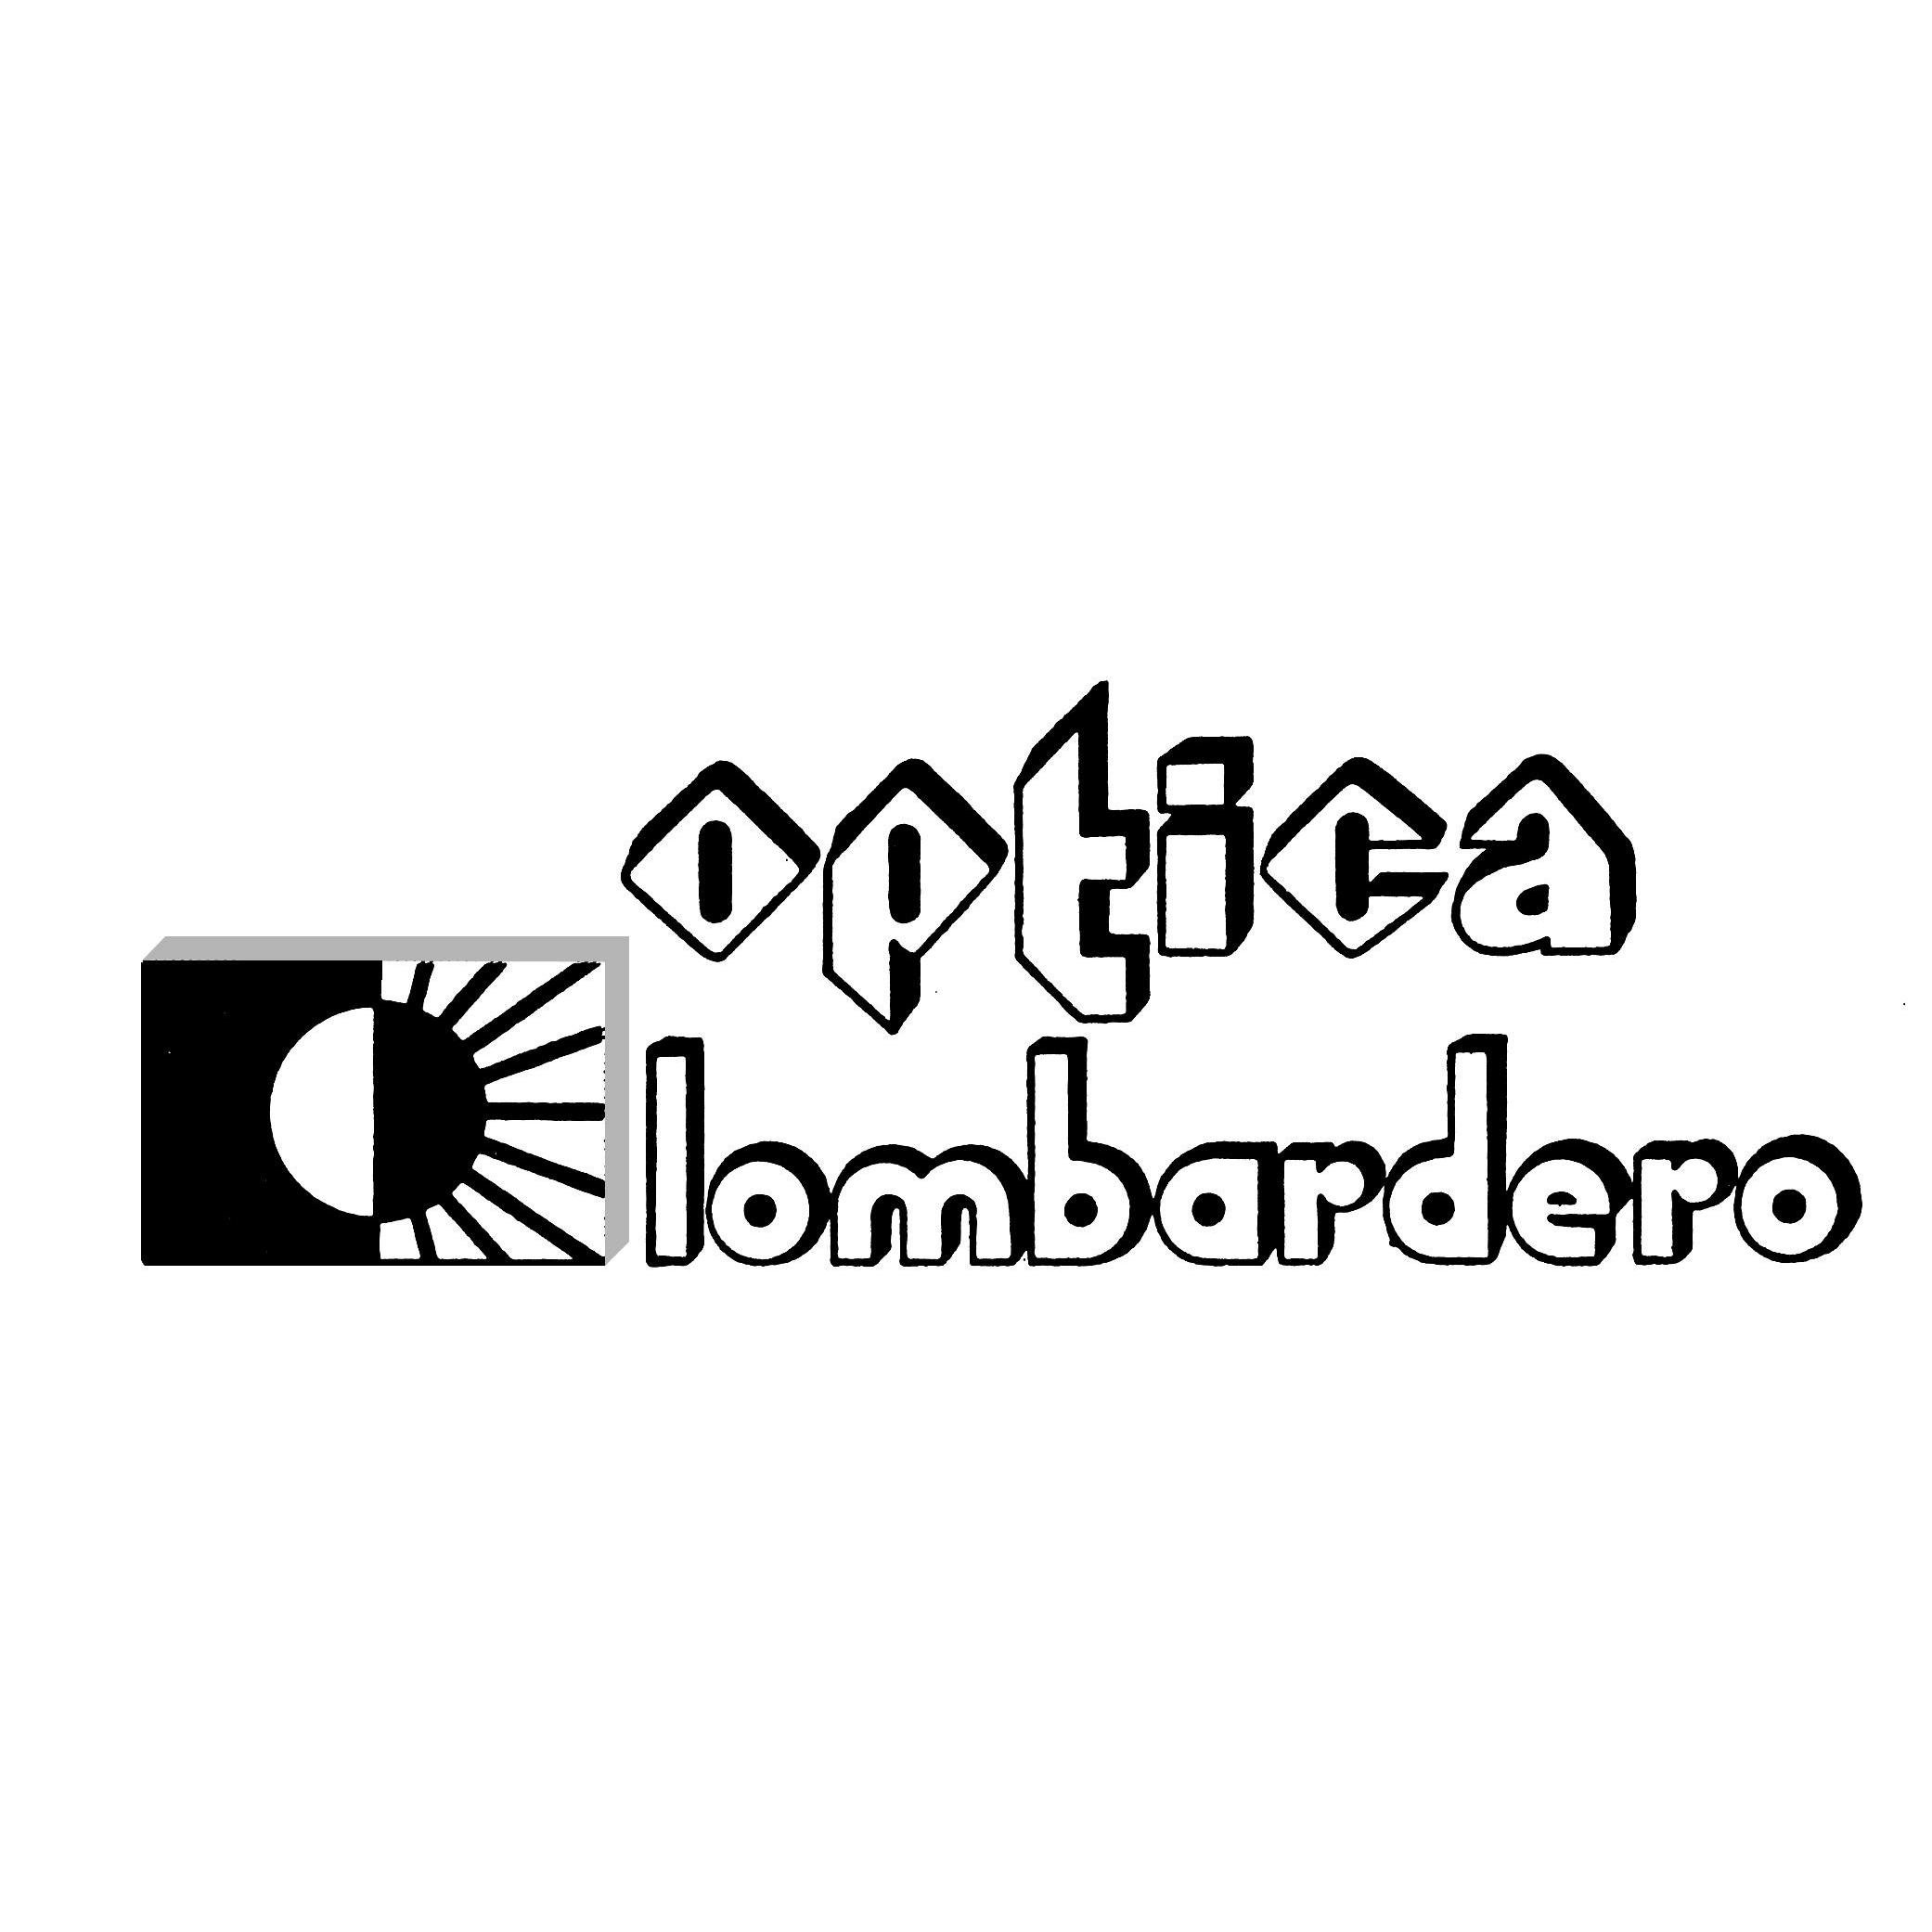 Óptica Lombardero Logo